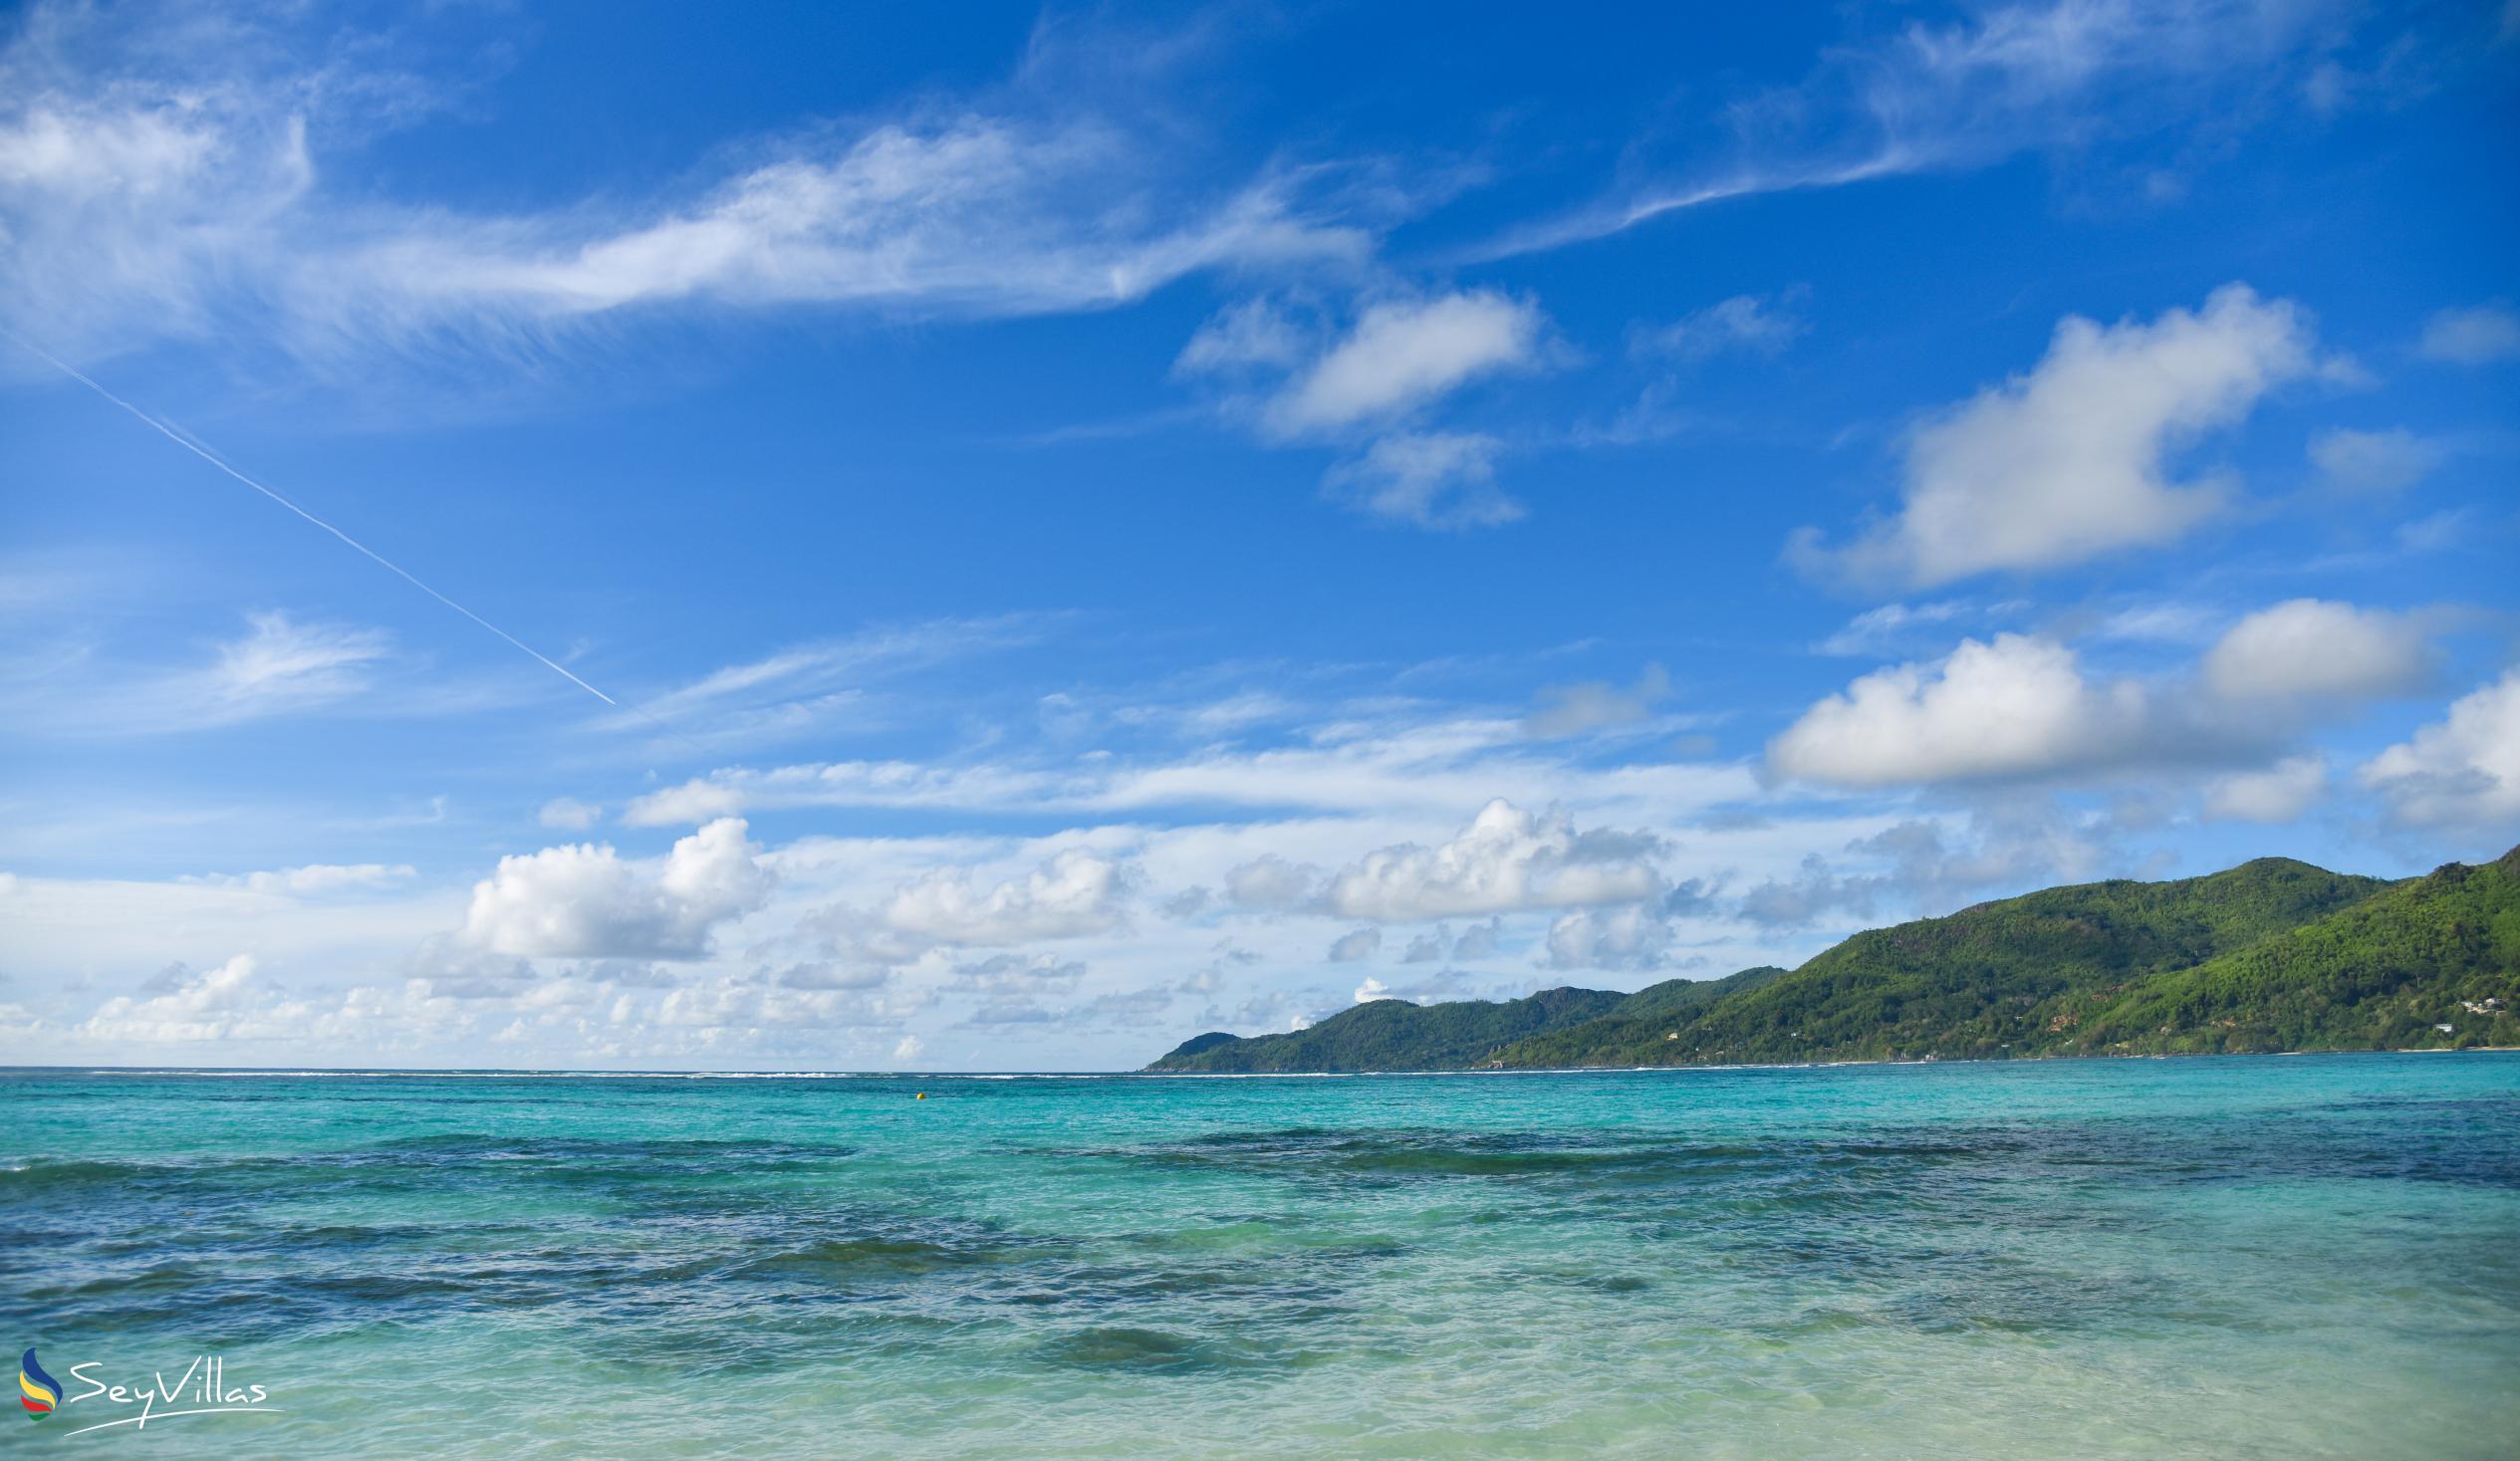 Photo 3: Fairyland Beach (Relax Beach) - Mahé (Seychelles)